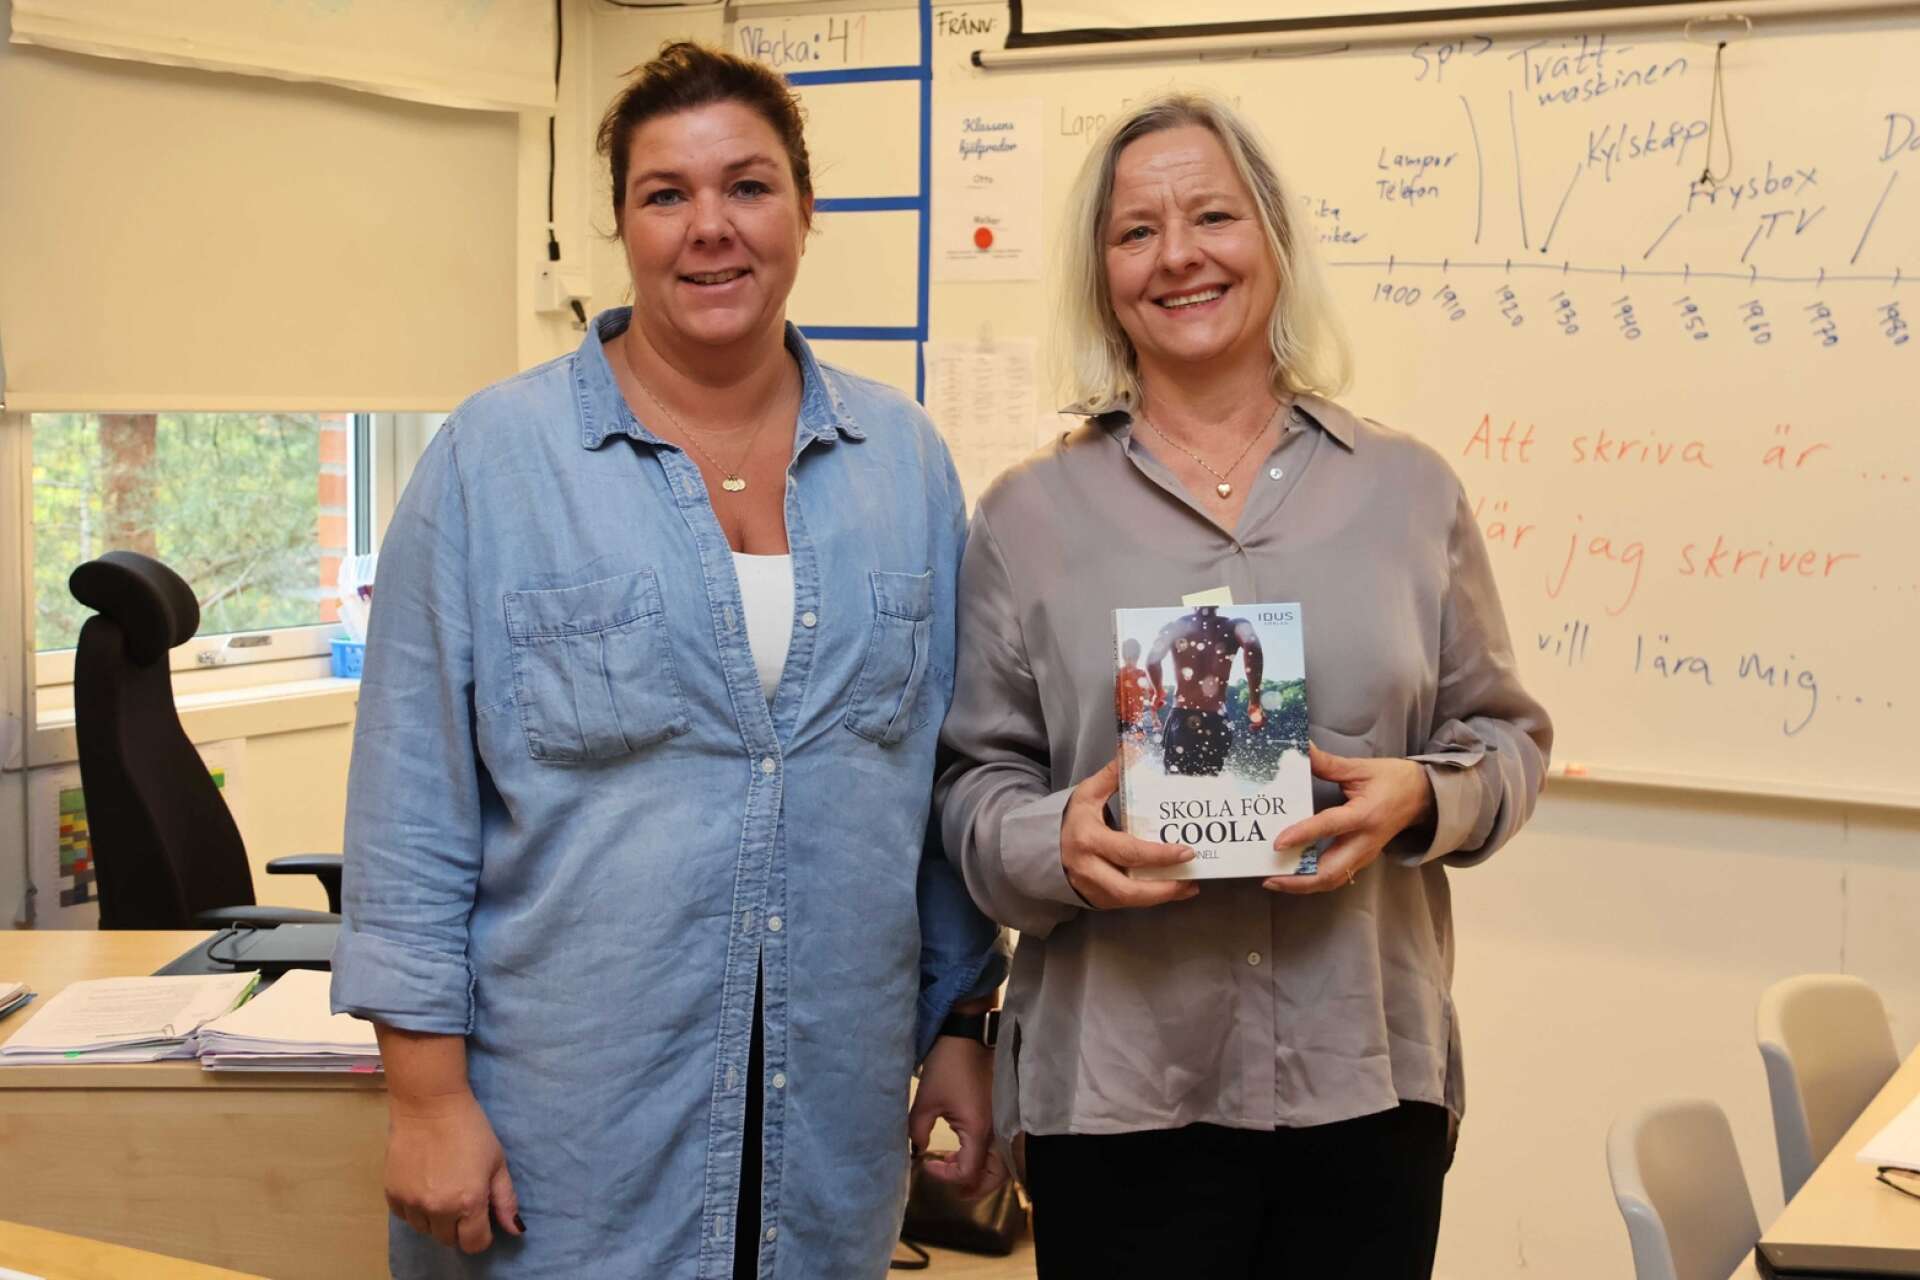 Barnboksförfattaren Åsa Öhnell, här tillsammans med läraren Linda Hedström, utgick från sin bok ”Skola för coola” vid besöket på Ekhagsskolan.